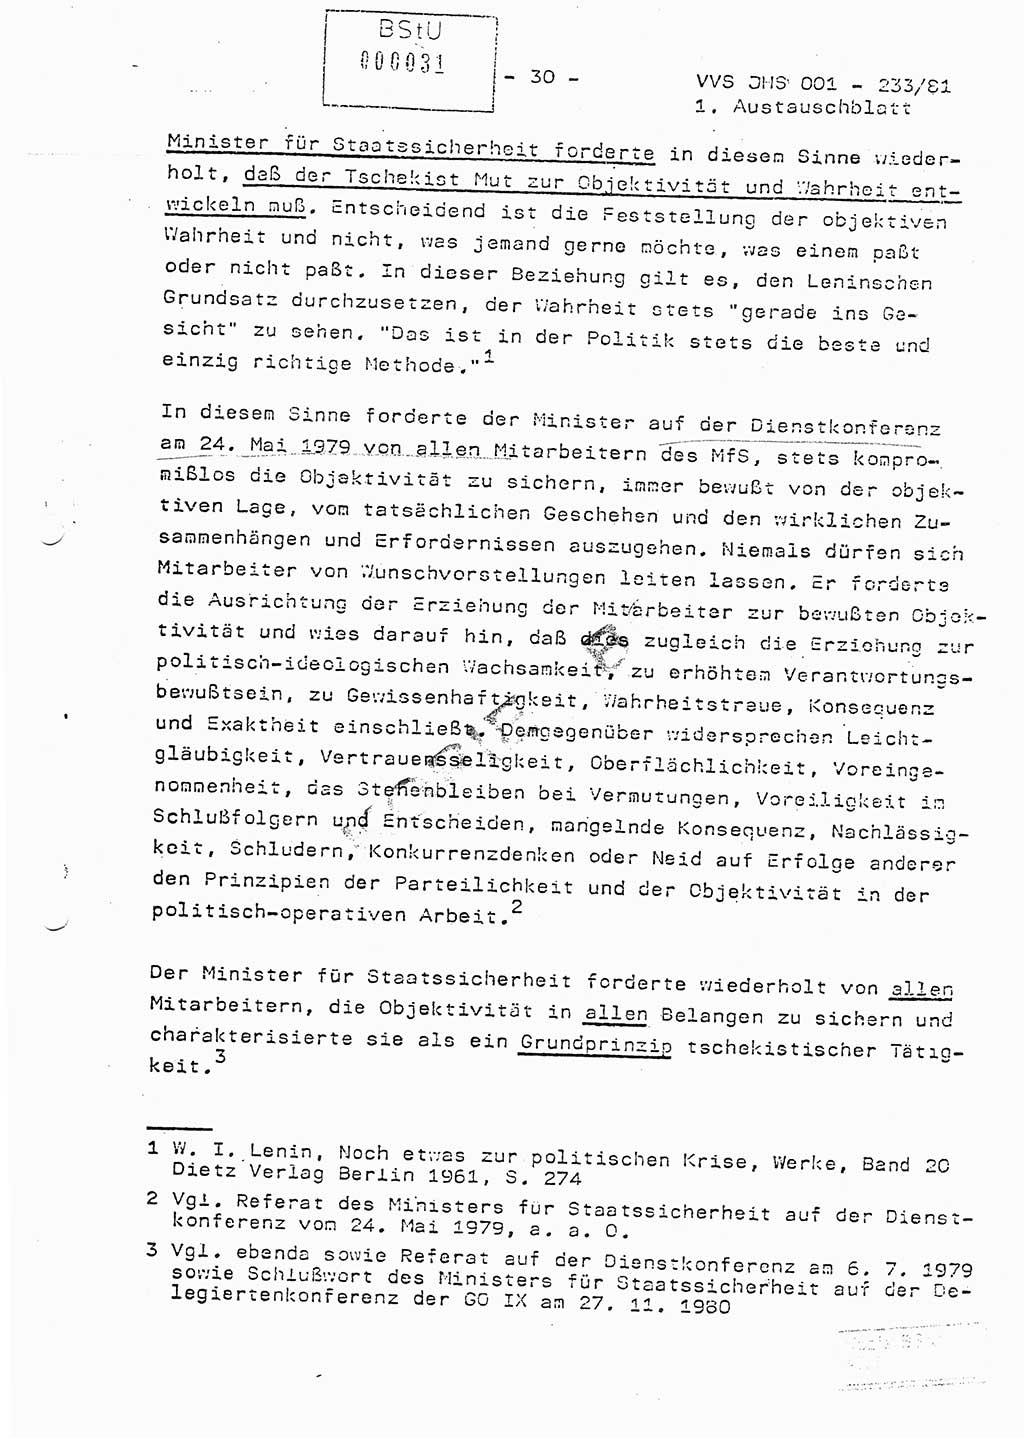 Dissertation Oberstleutnant Horst Zank (JHS), Oberstleutnant Dr. Karl-Heinz Knoblauch (JHS), Oberstleutnant Gustav-Adolf Kowalewski (HA Ⅸ), Oberstleutnant Wolfgang Plötner (HA Ⅸ), Ministerium für Staatssicherheit (MfS) [Deutsche Demokratische Republik (DDR)], Juristische Hochschule (JHS), Vertrauliche Verschlußsache (VVS) o001-233/81, Potsdam 1981, Blatt 31 (Diss. MfS DDR JHS VVS o001-233/81 1981, Bl. 31)